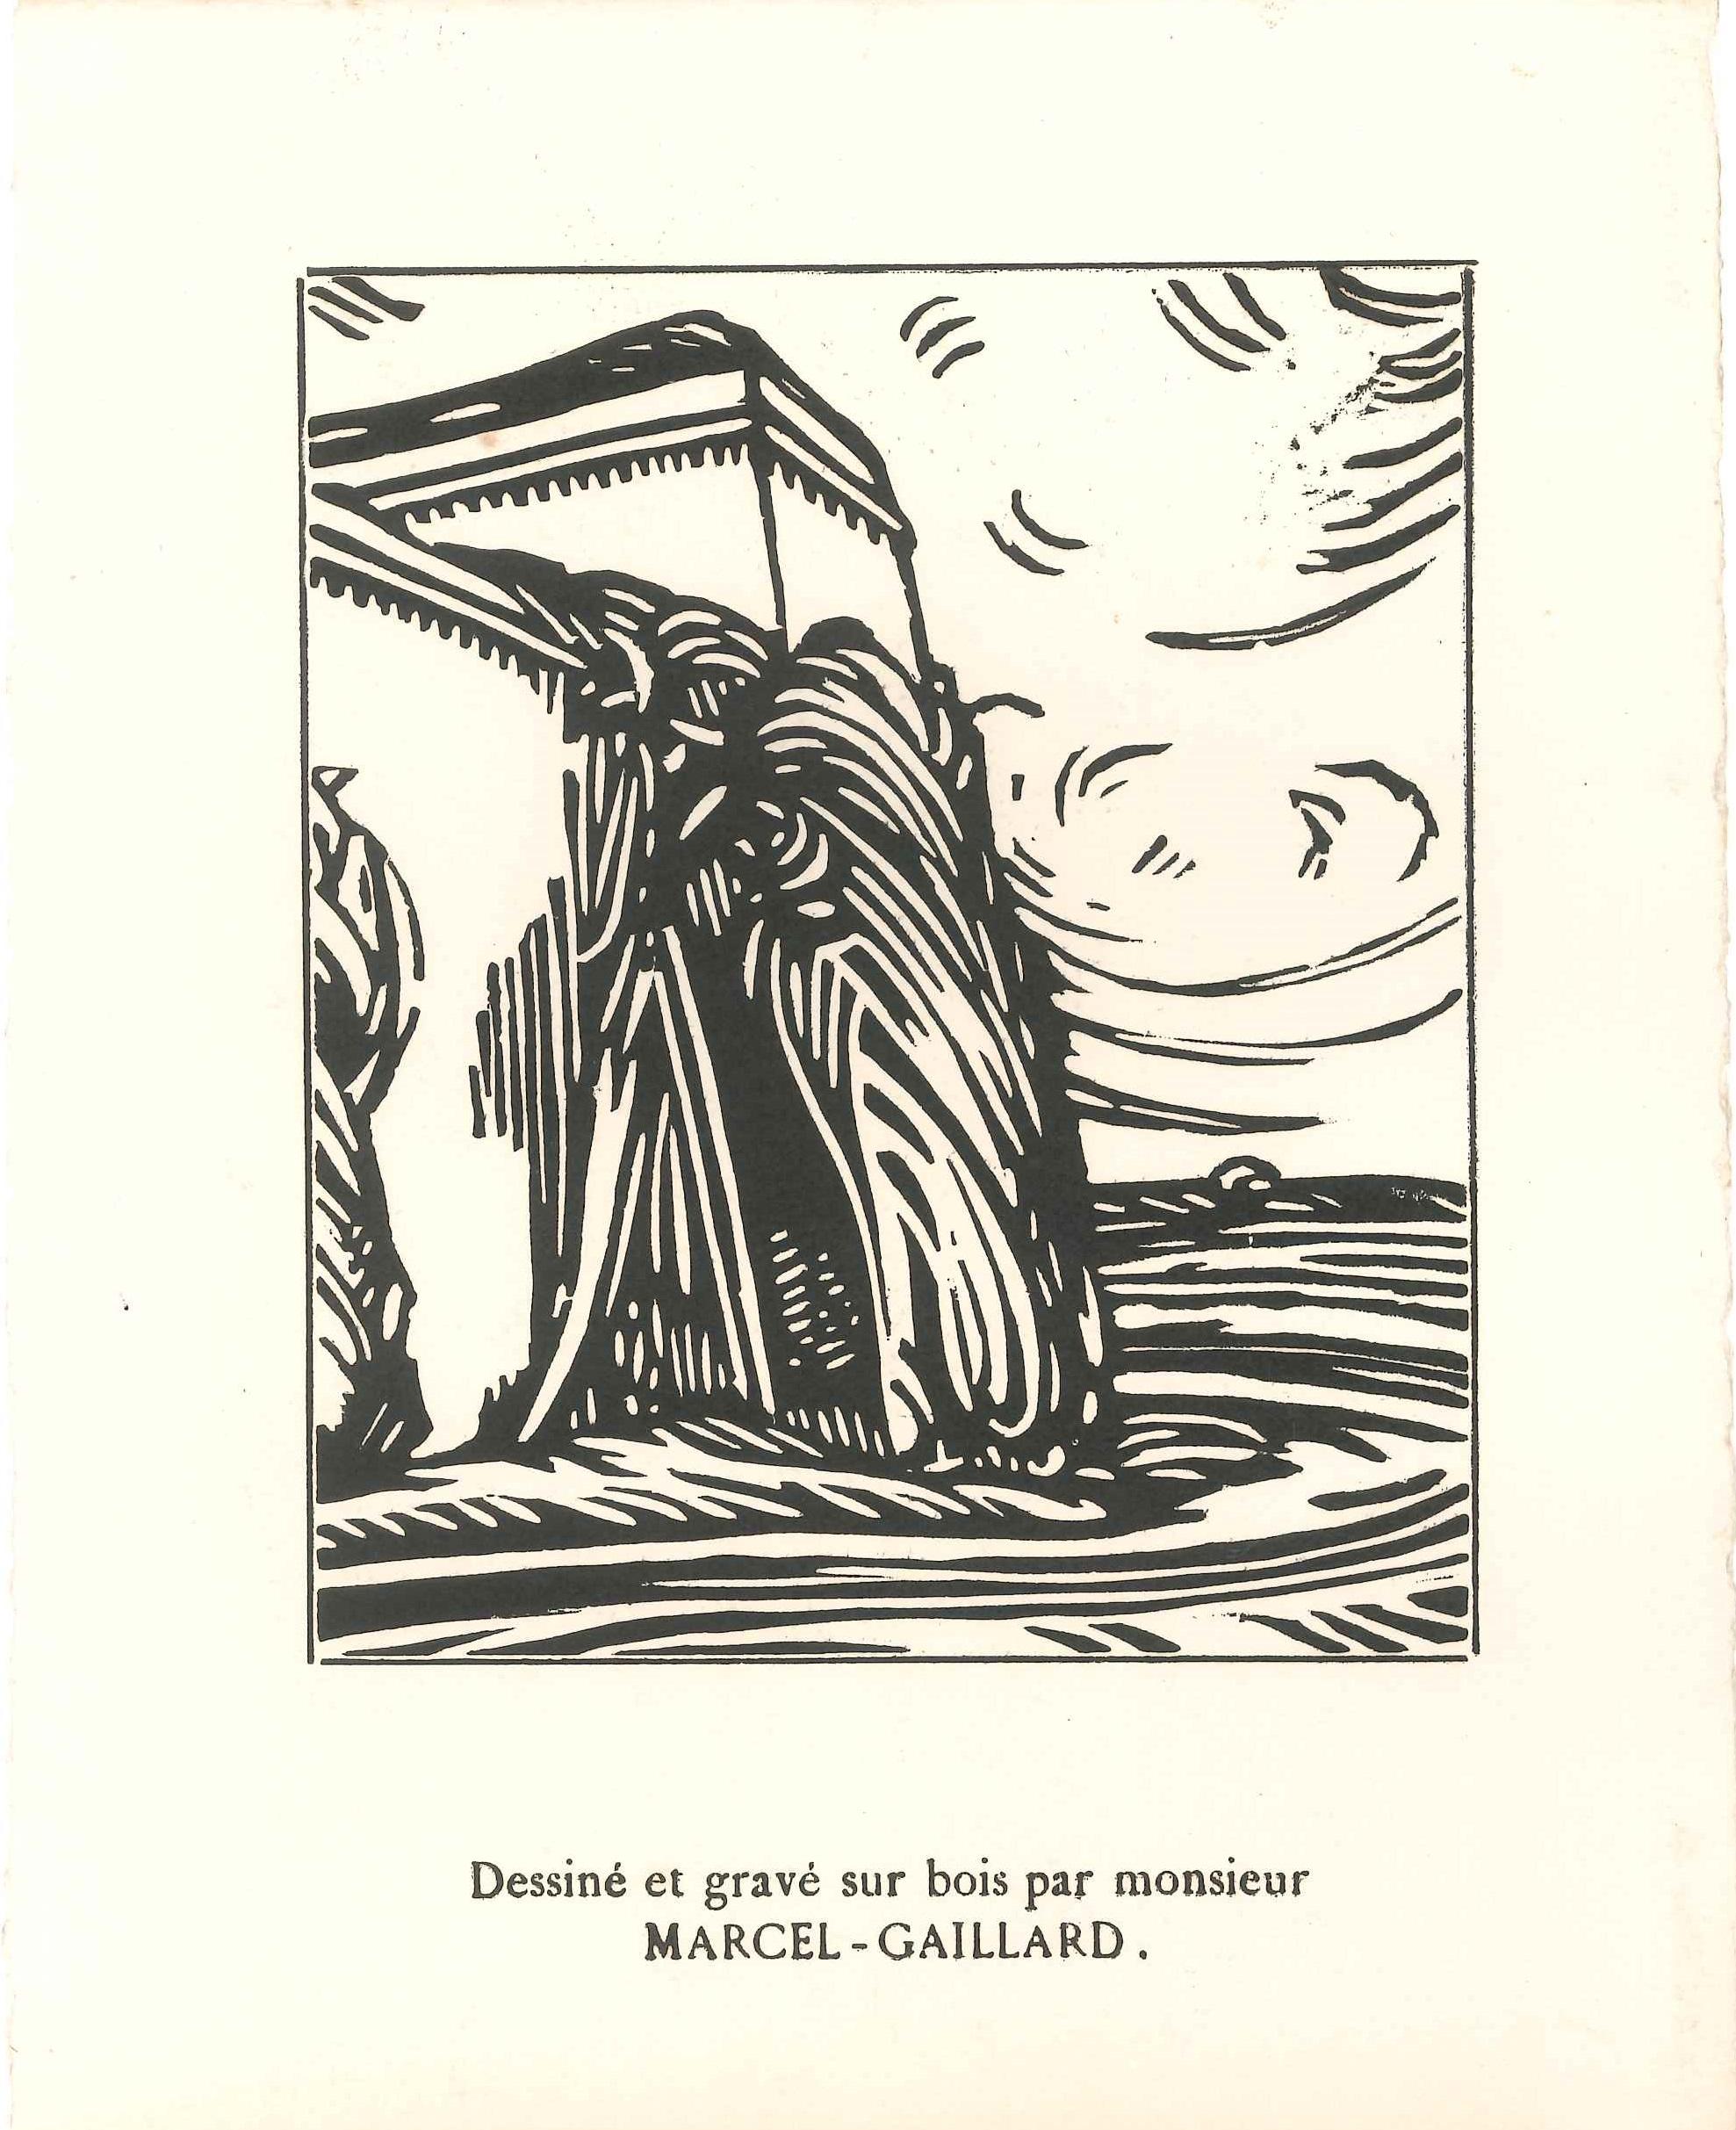 Desert ist eine wunderschöne Schwarz-Weiß-Xylographie auf elfenbeinfarbenem Papier des französischen Landschaftsmalers Marcel Gaillard (1886 - 1947).

Dieser Originaldruck, der ein orientalisches Gebäude in der Wüste darstellt, wird durch eine sehr